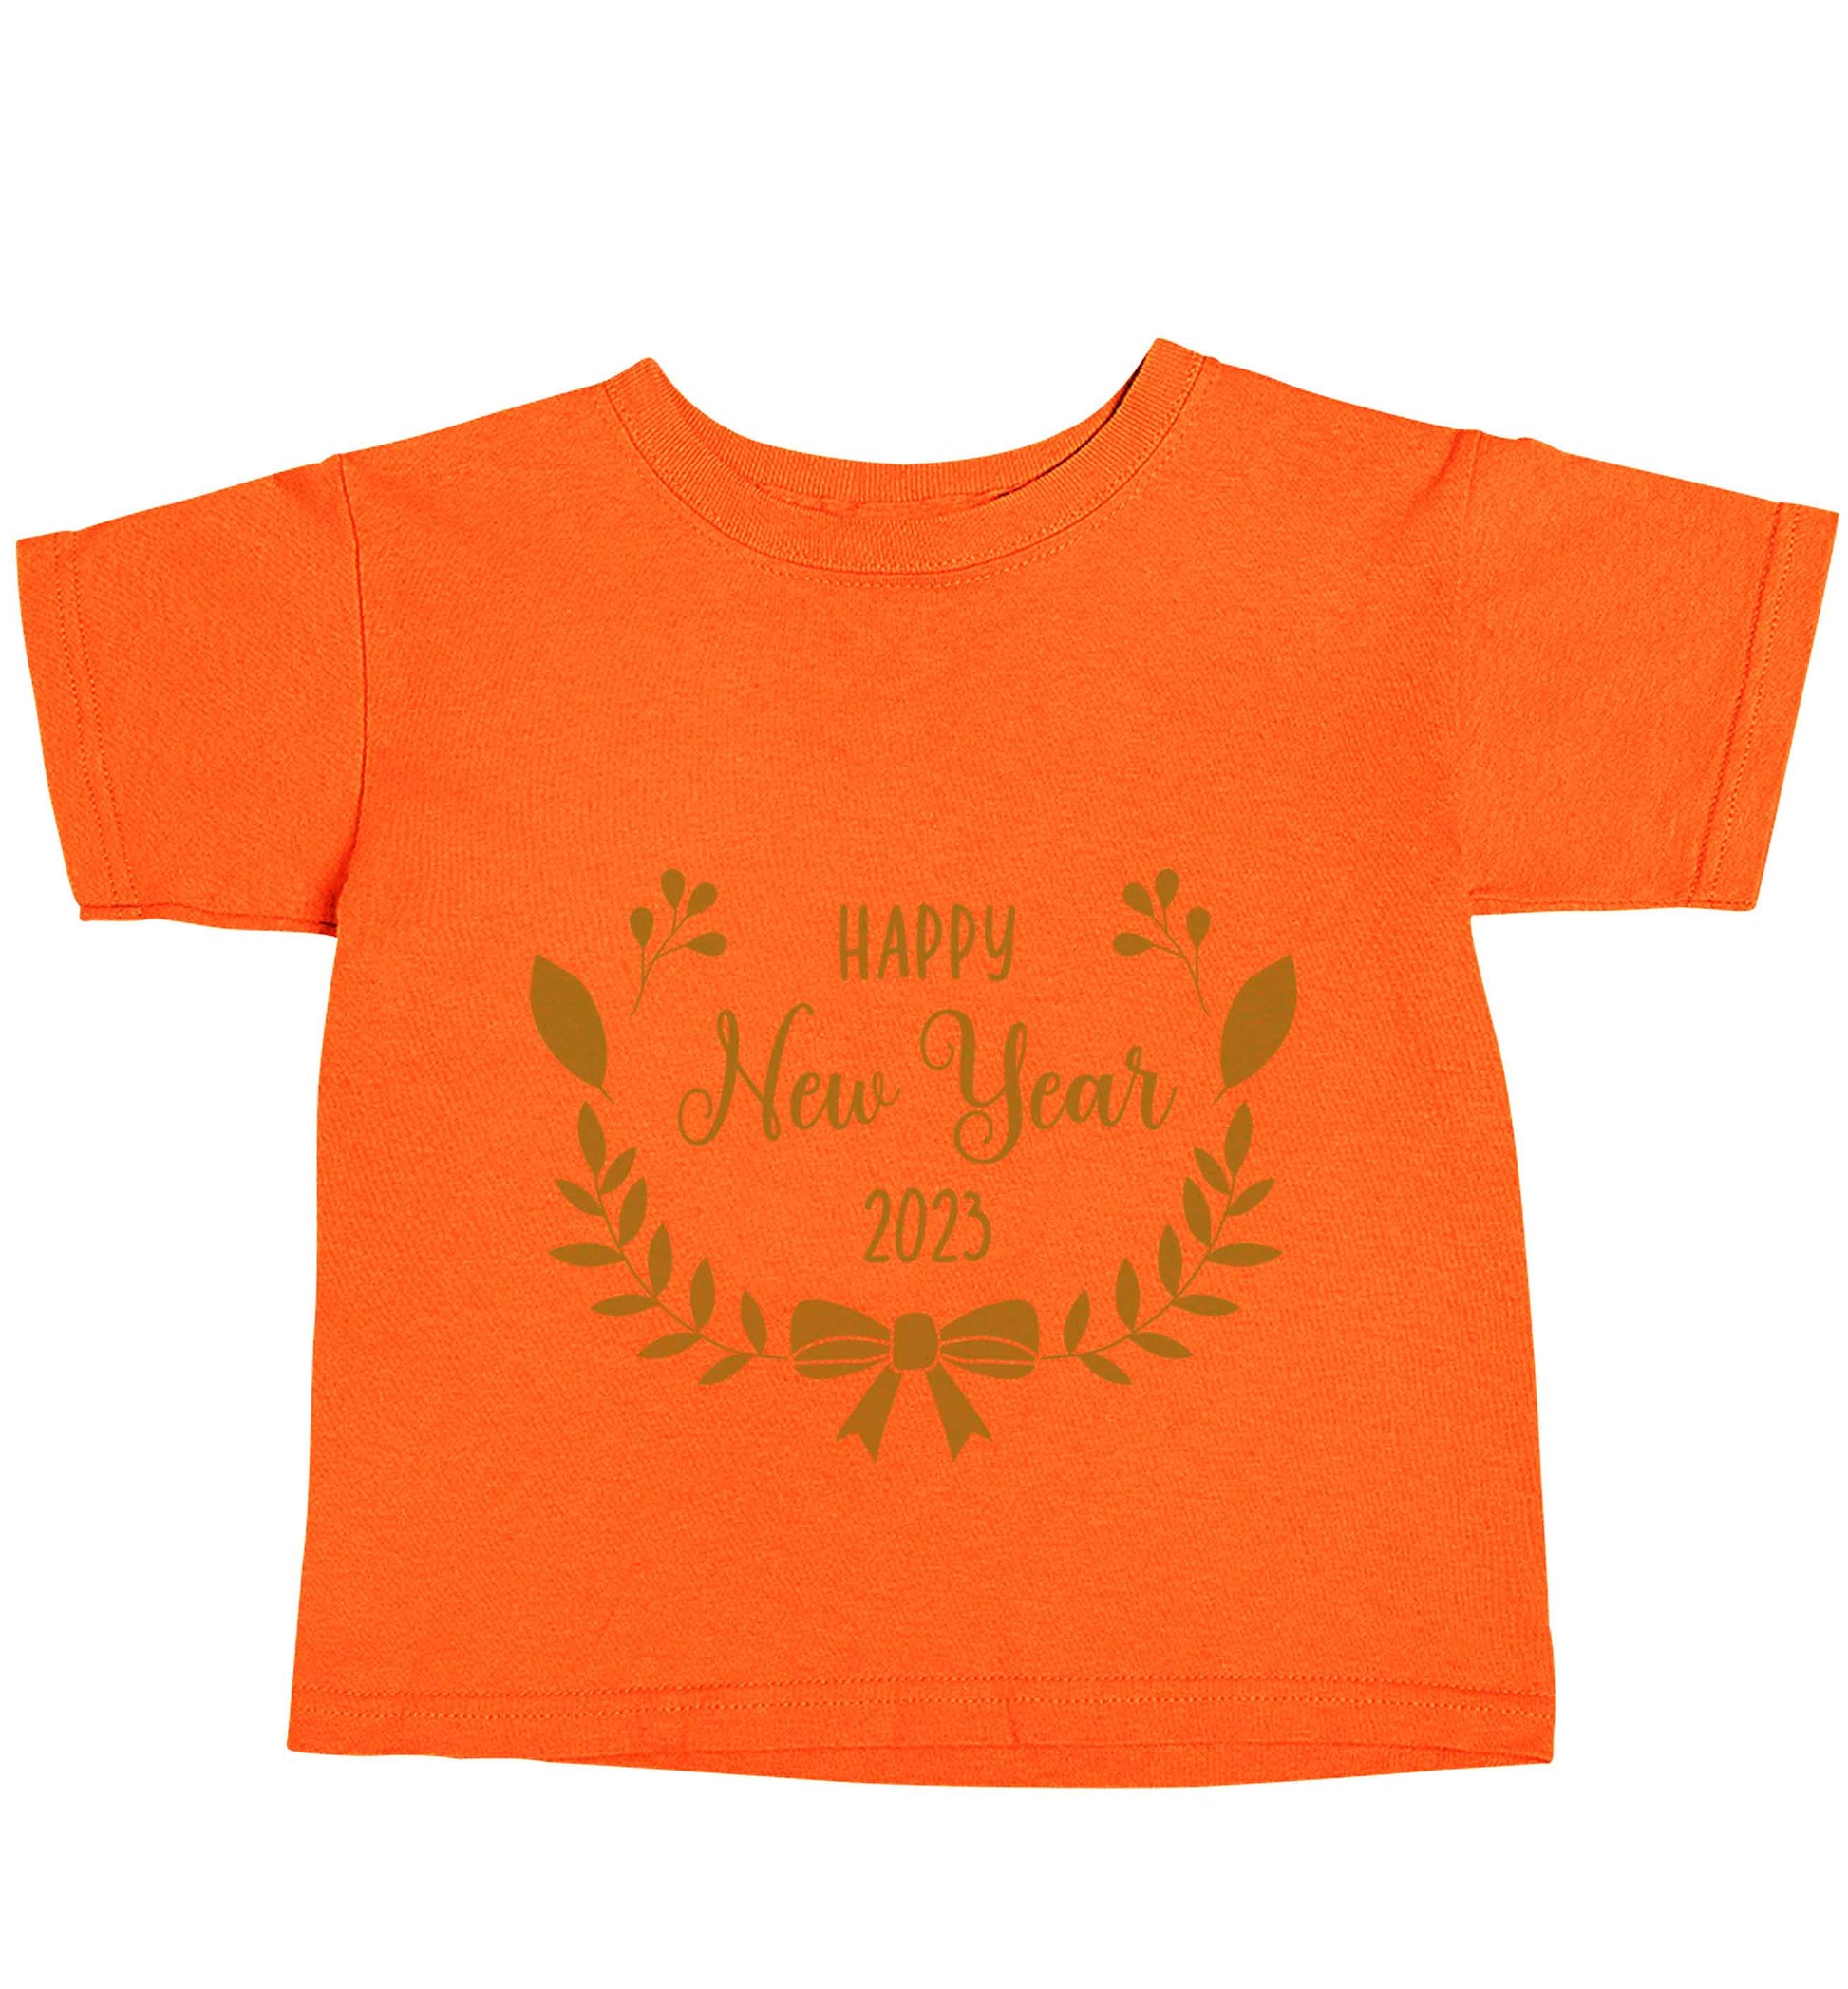 Happy New Year 2023 orange baby toddler Tshirt 2 Years